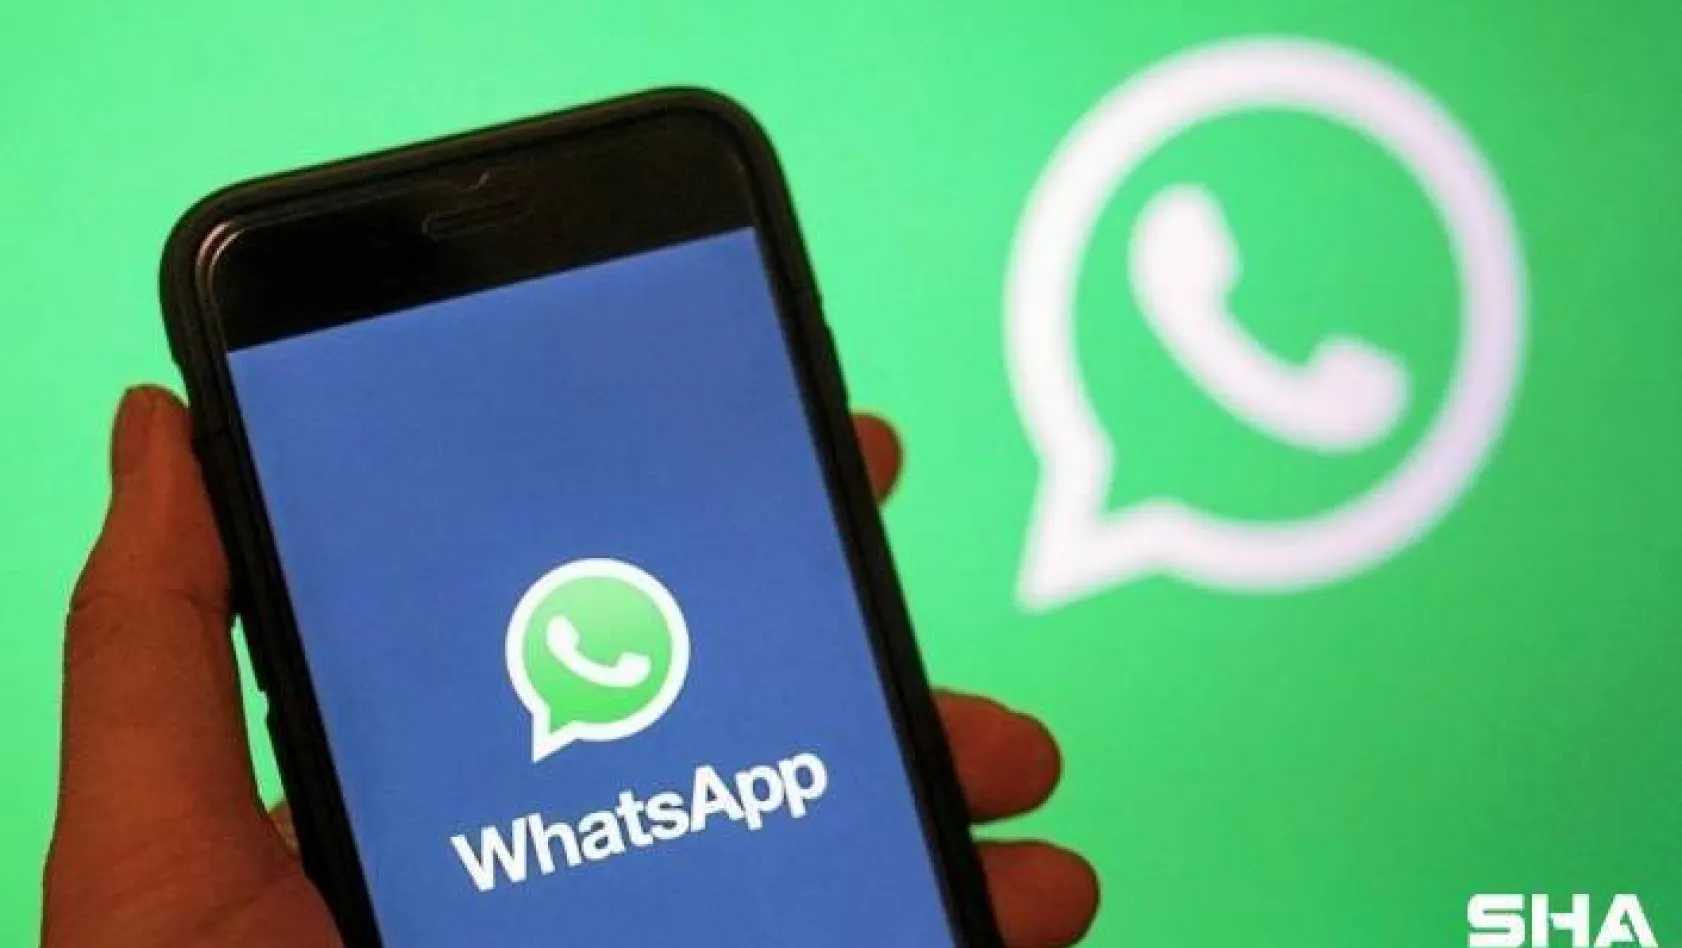 Whatsapp'ın yeni gizlilik sözleşmesindeki tehlike